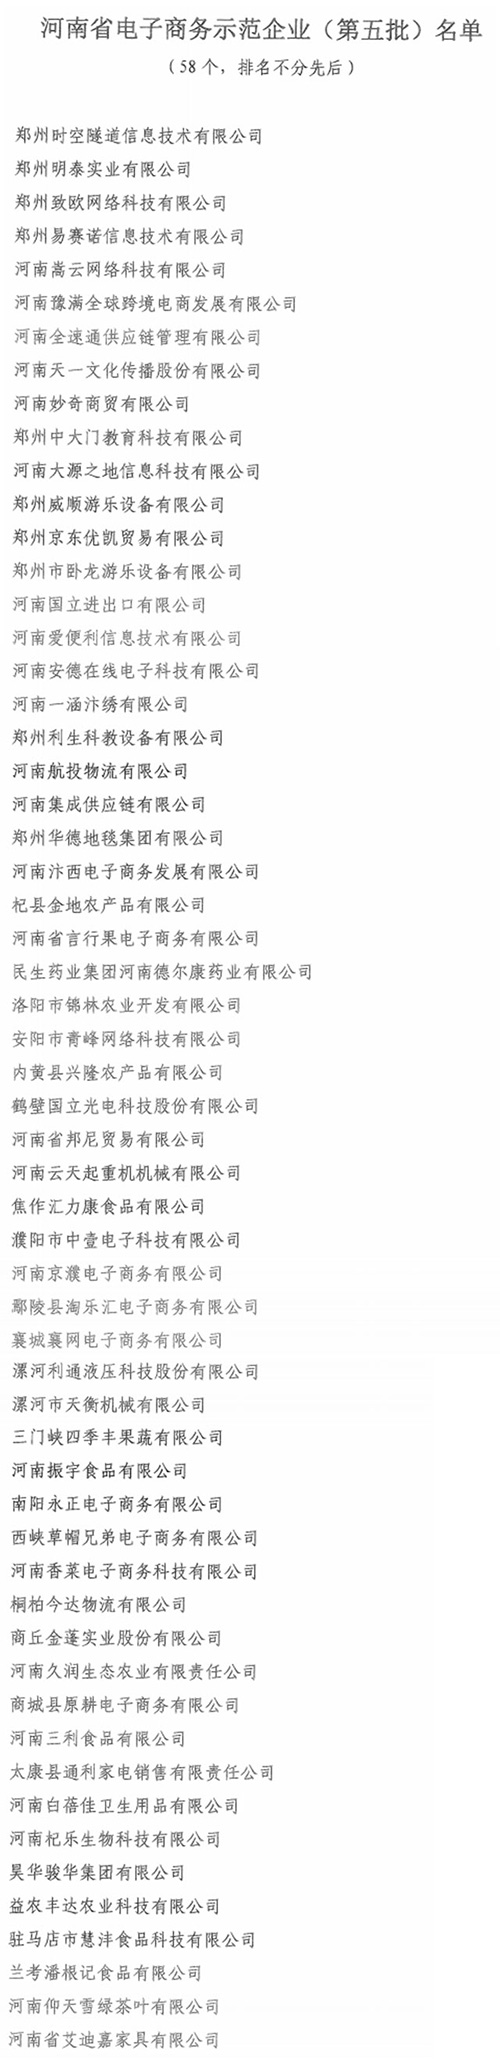 河南省公布79家电子商务示范企业、示范基地(第五批)名单